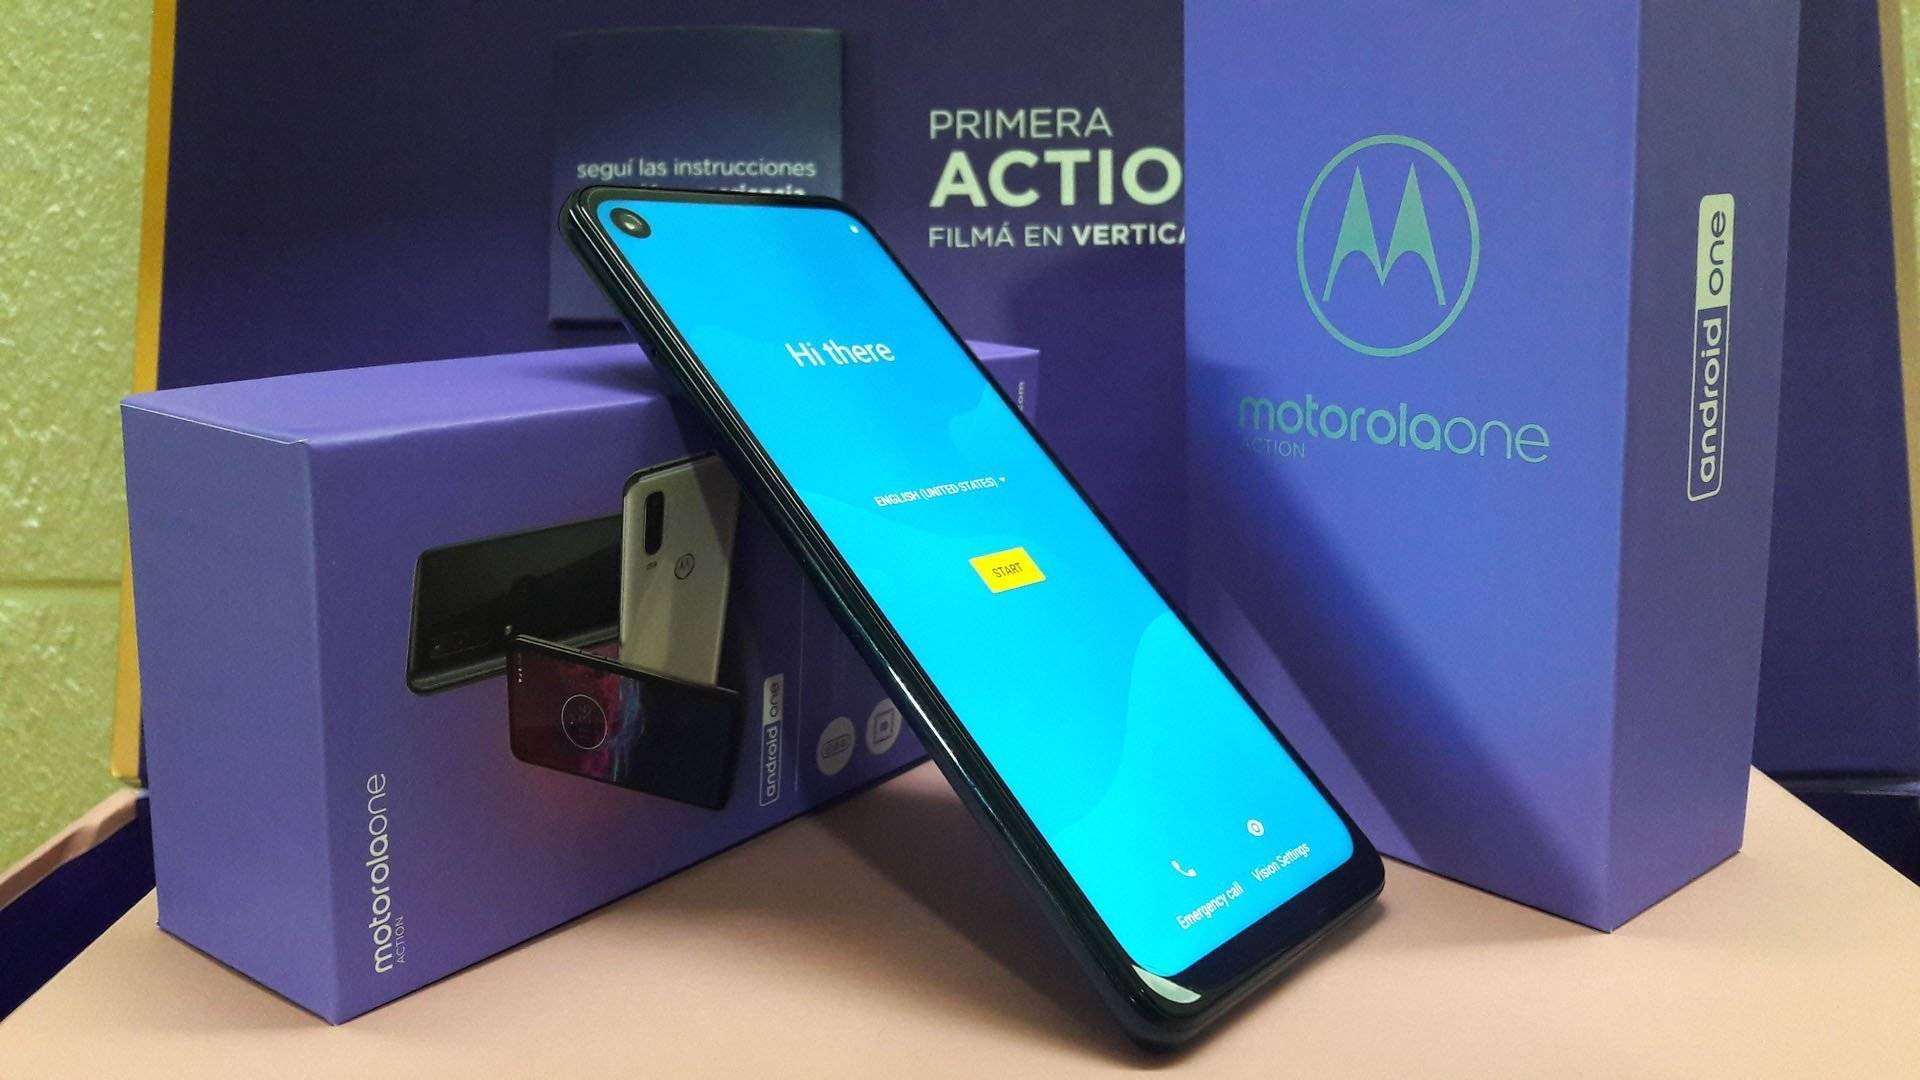 Motorola One Action: Características, Analisis, Precio en Argentina